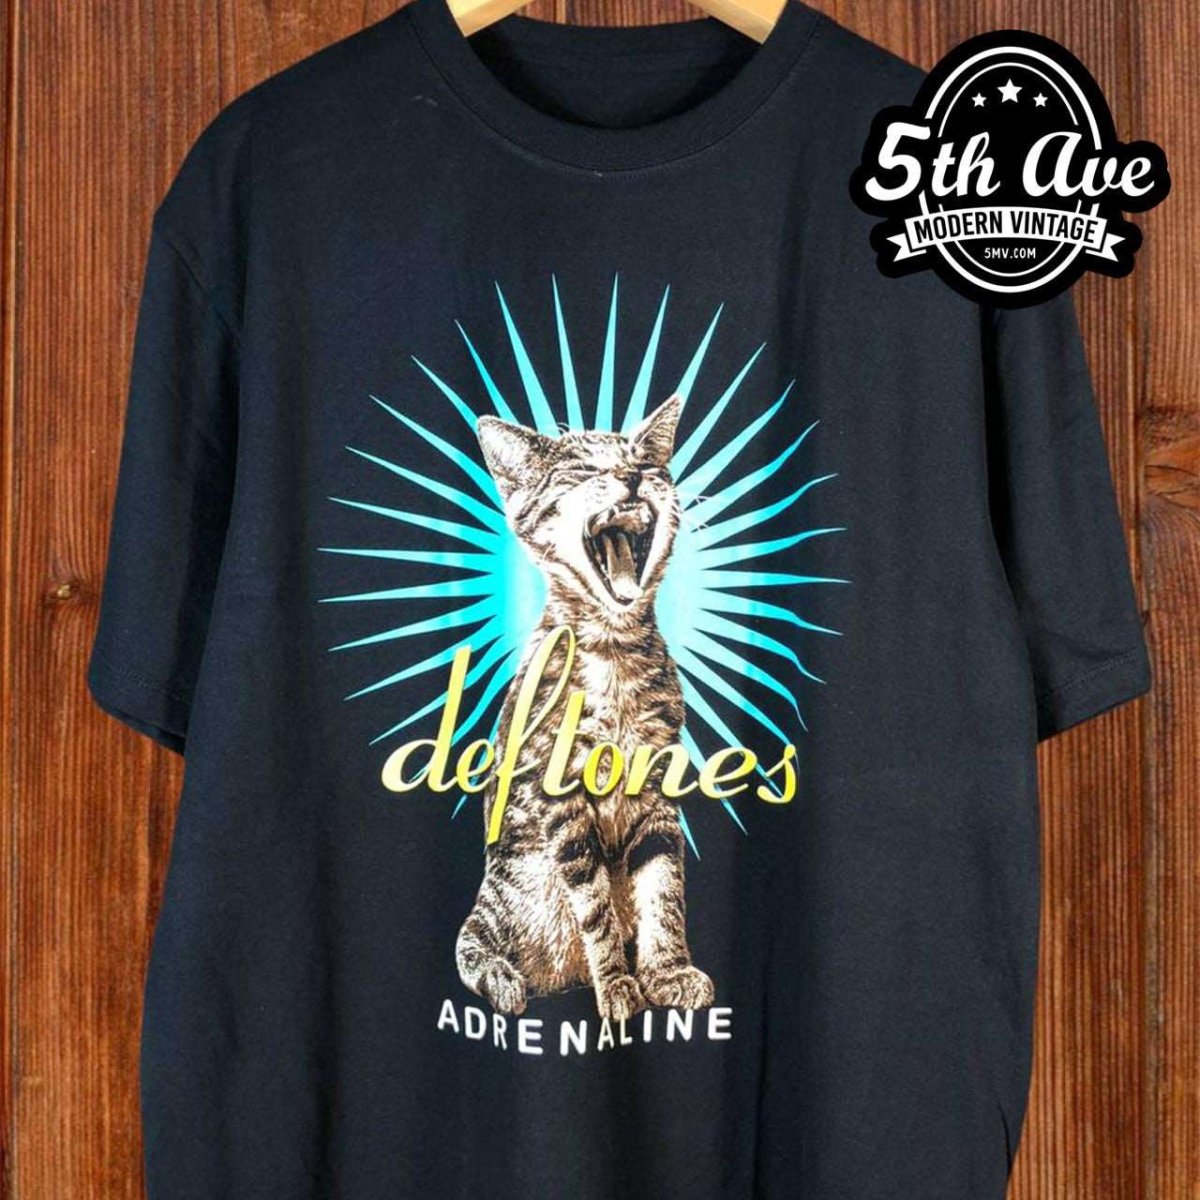 Deftones Adrenaline - New Vintage Band T shirt - Vintage Band Shirts